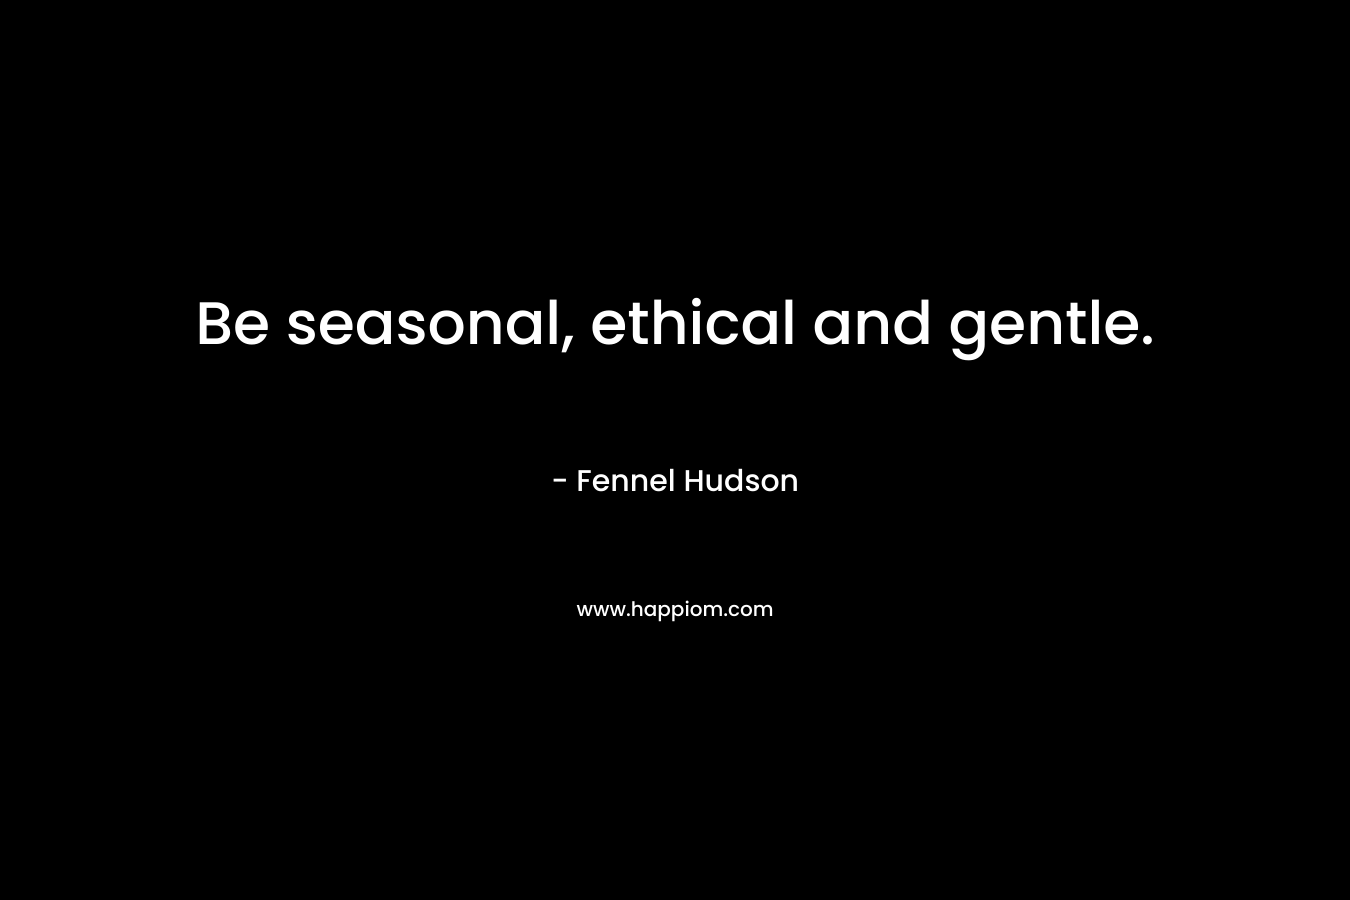 Be seasonal, ethical and gentle.